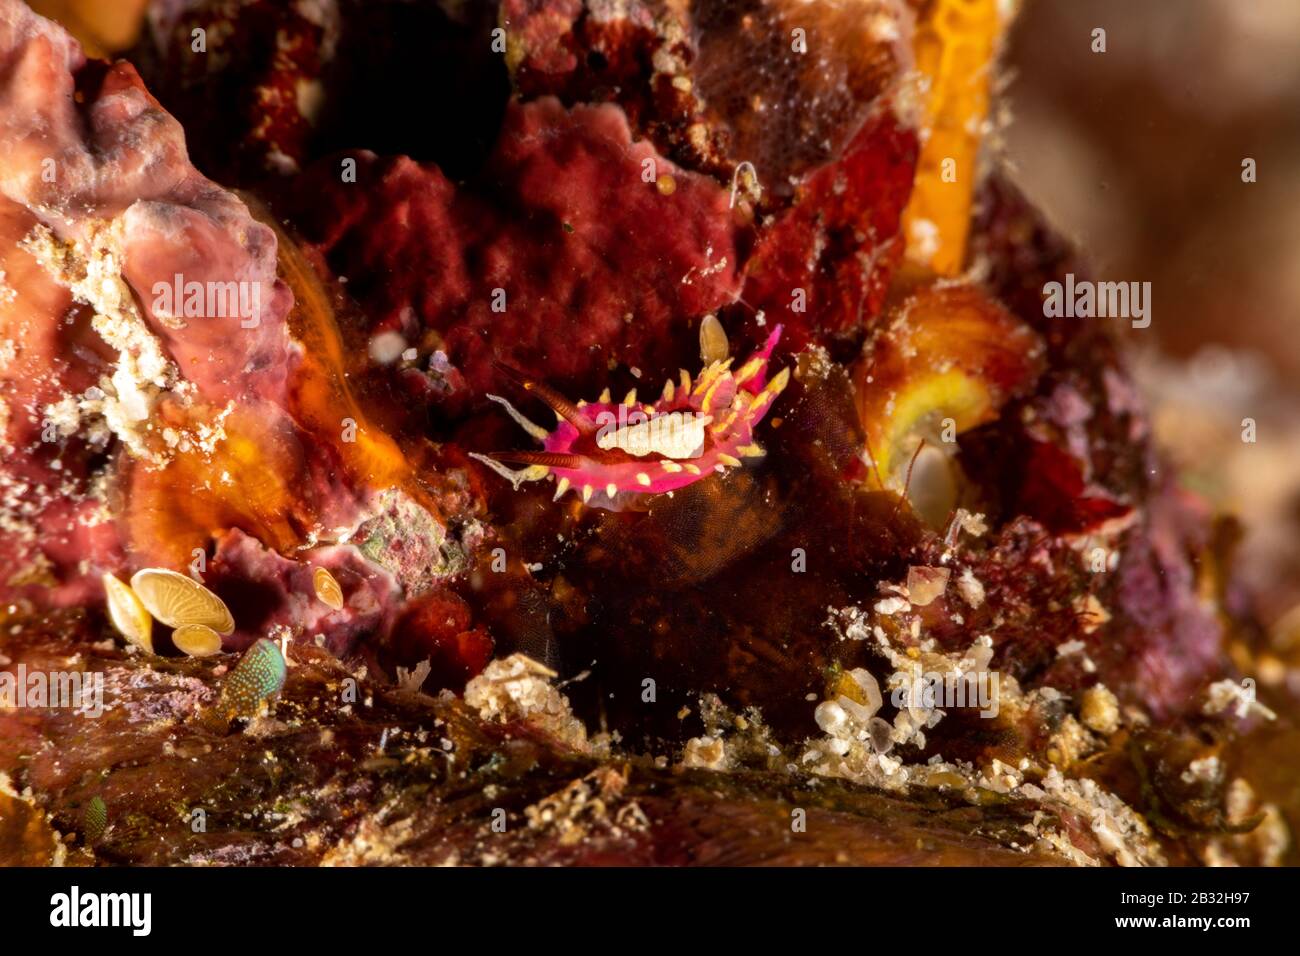 La plus belle de l'escargots sous l'océan Pacifique et Indien Banque D'Images